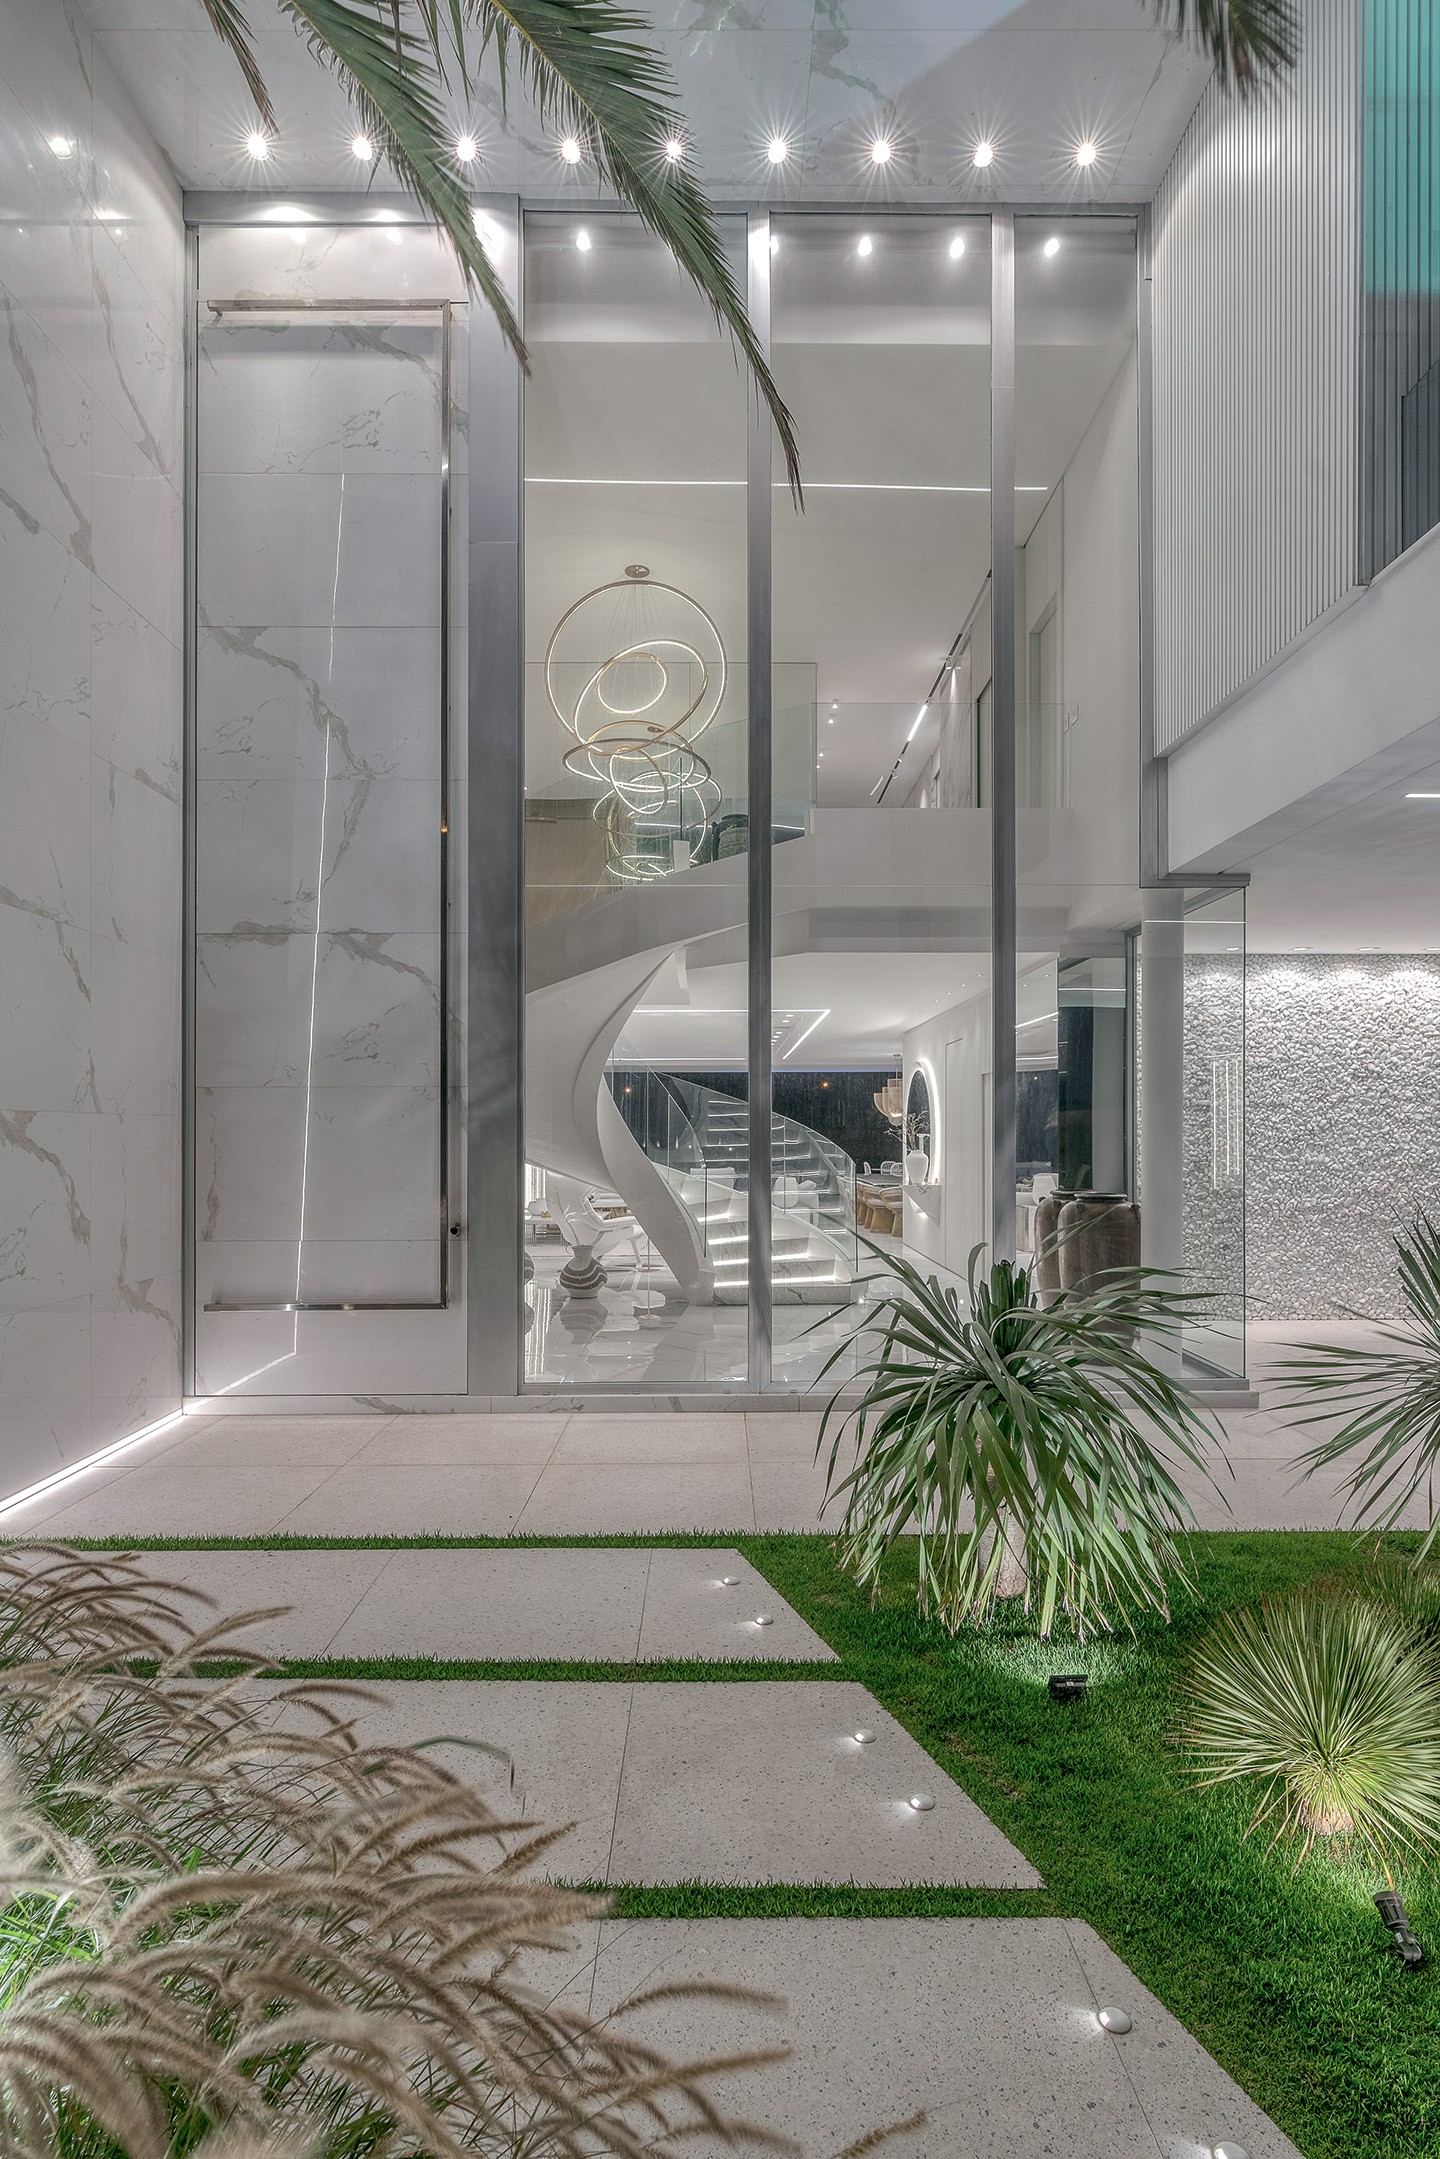 Casa de 500 m² com decoração monocromática e fachada moderna (Foto: Vinicius Ferzeli/divulgação)